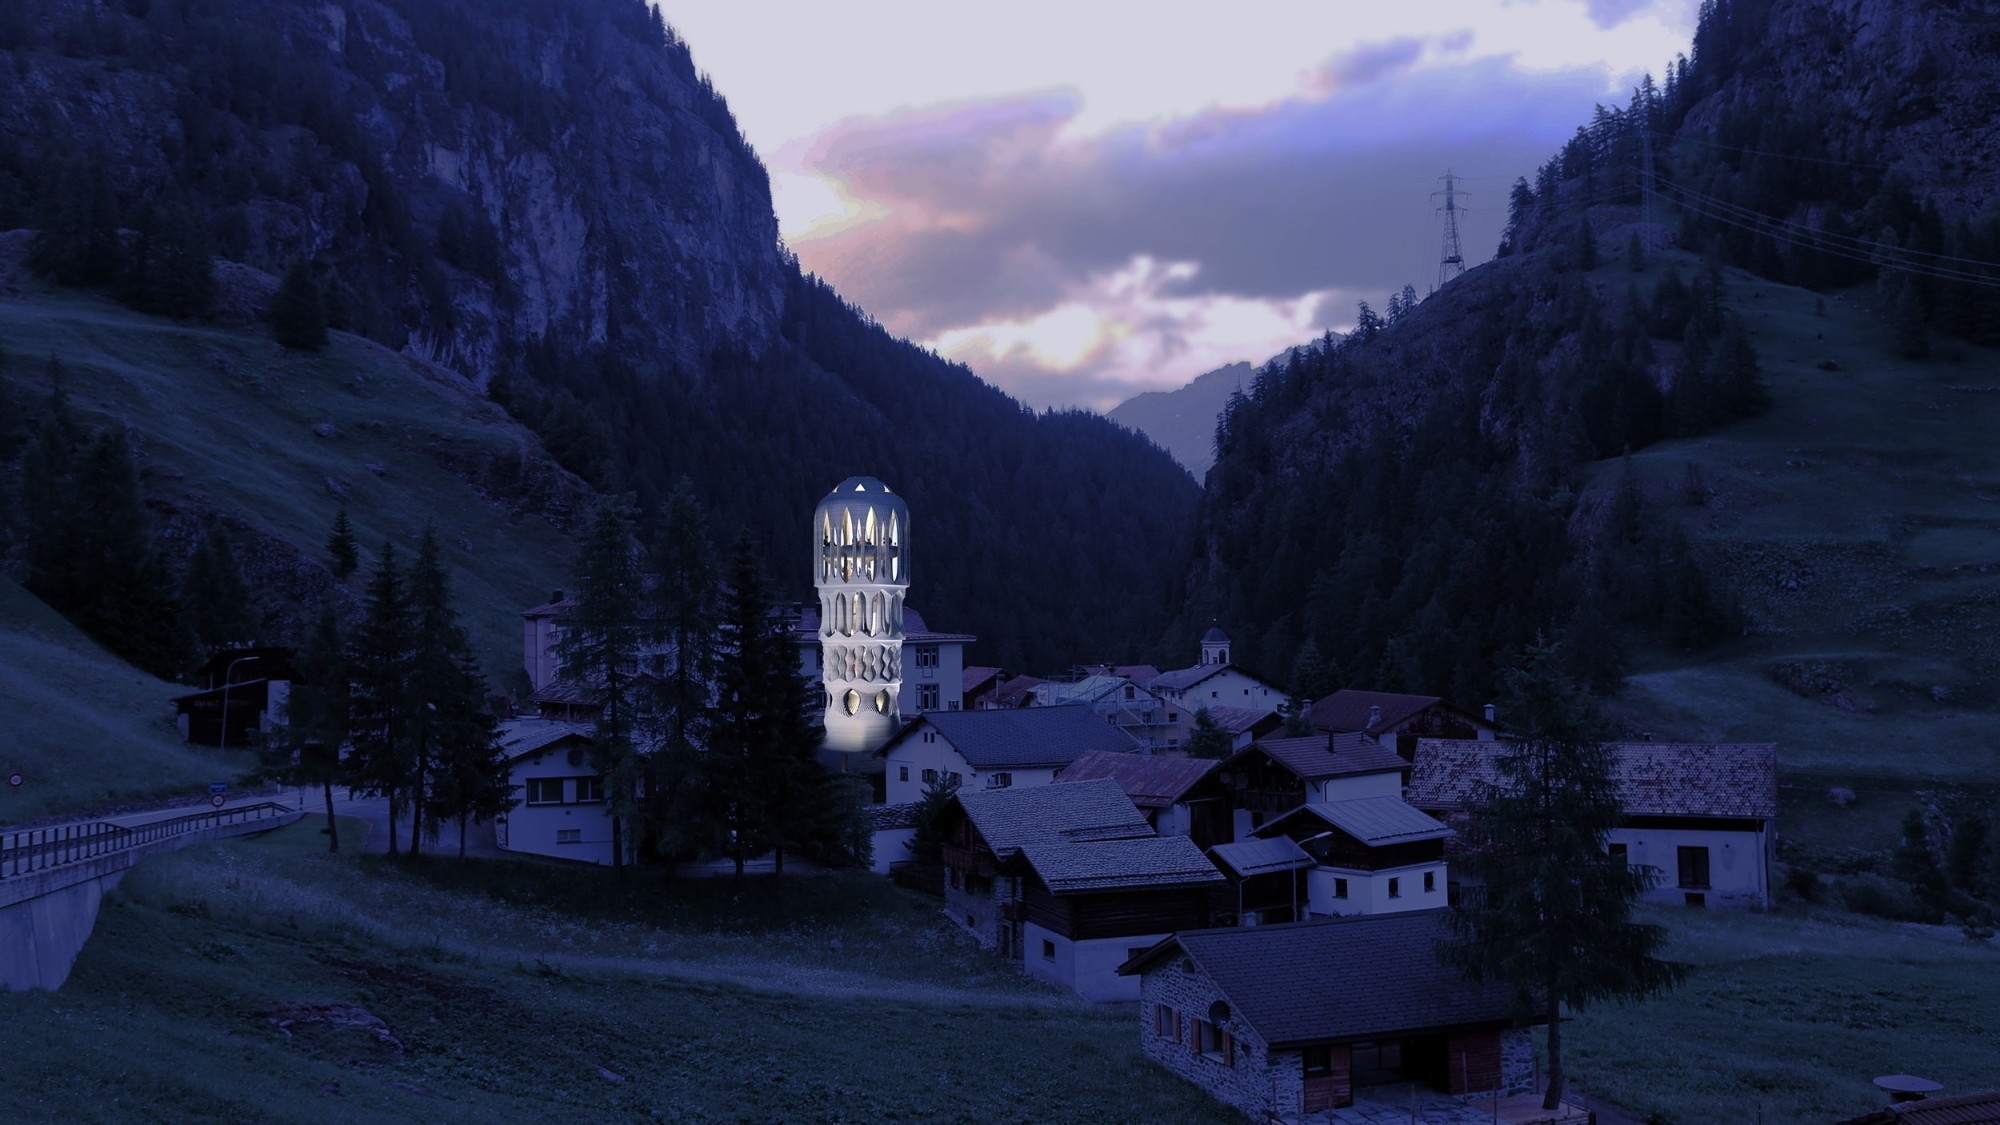 La tour s'intègre parfaitement bien dans le paysage en exaltant sa lumière durant la nuit